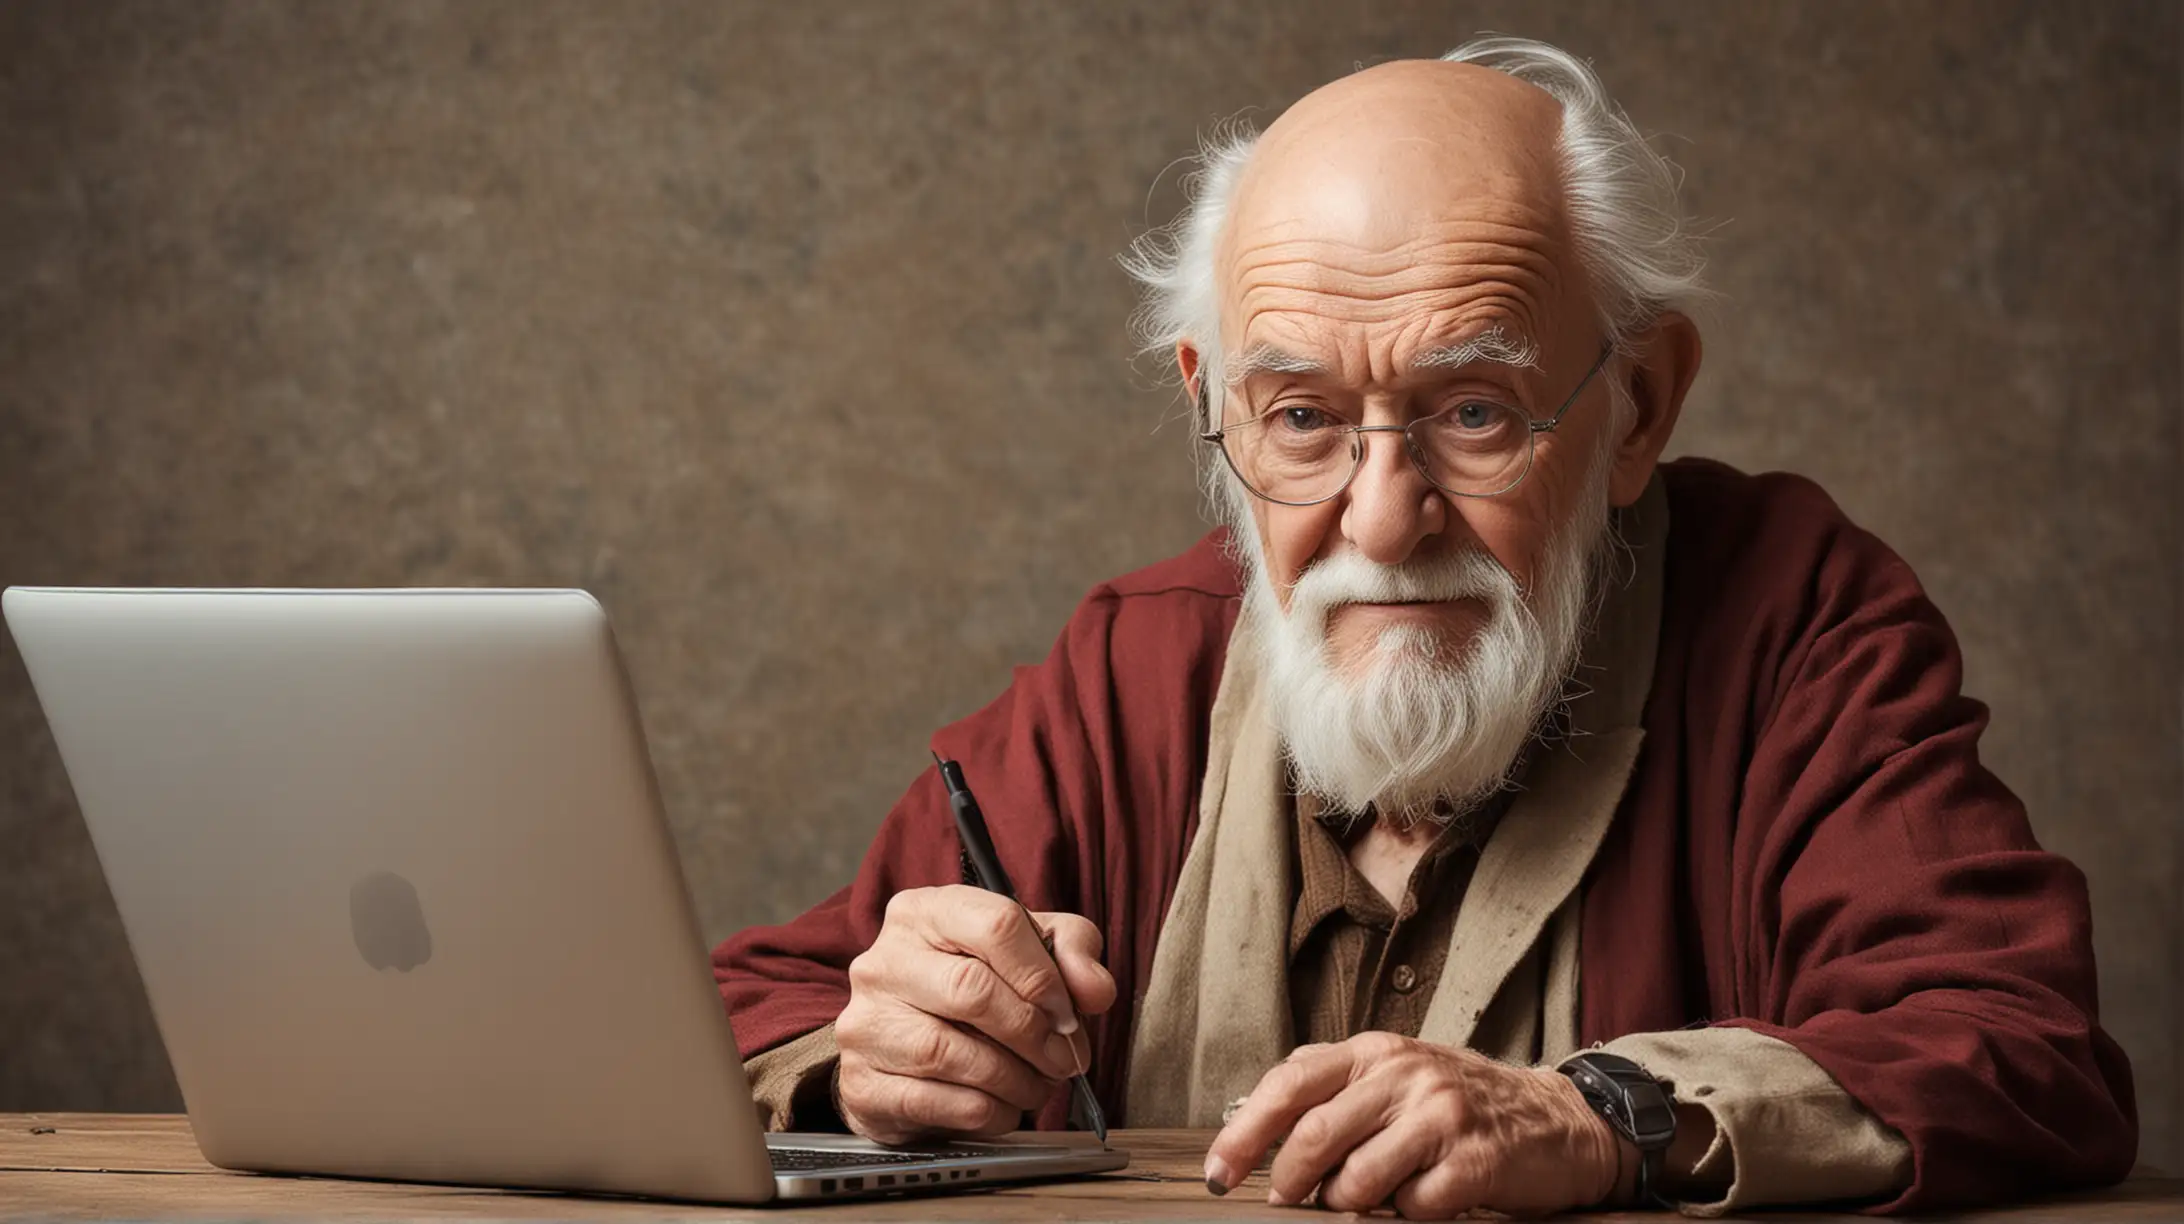 Мудрый старец подписывается на социальные сети YouTube и Instagram